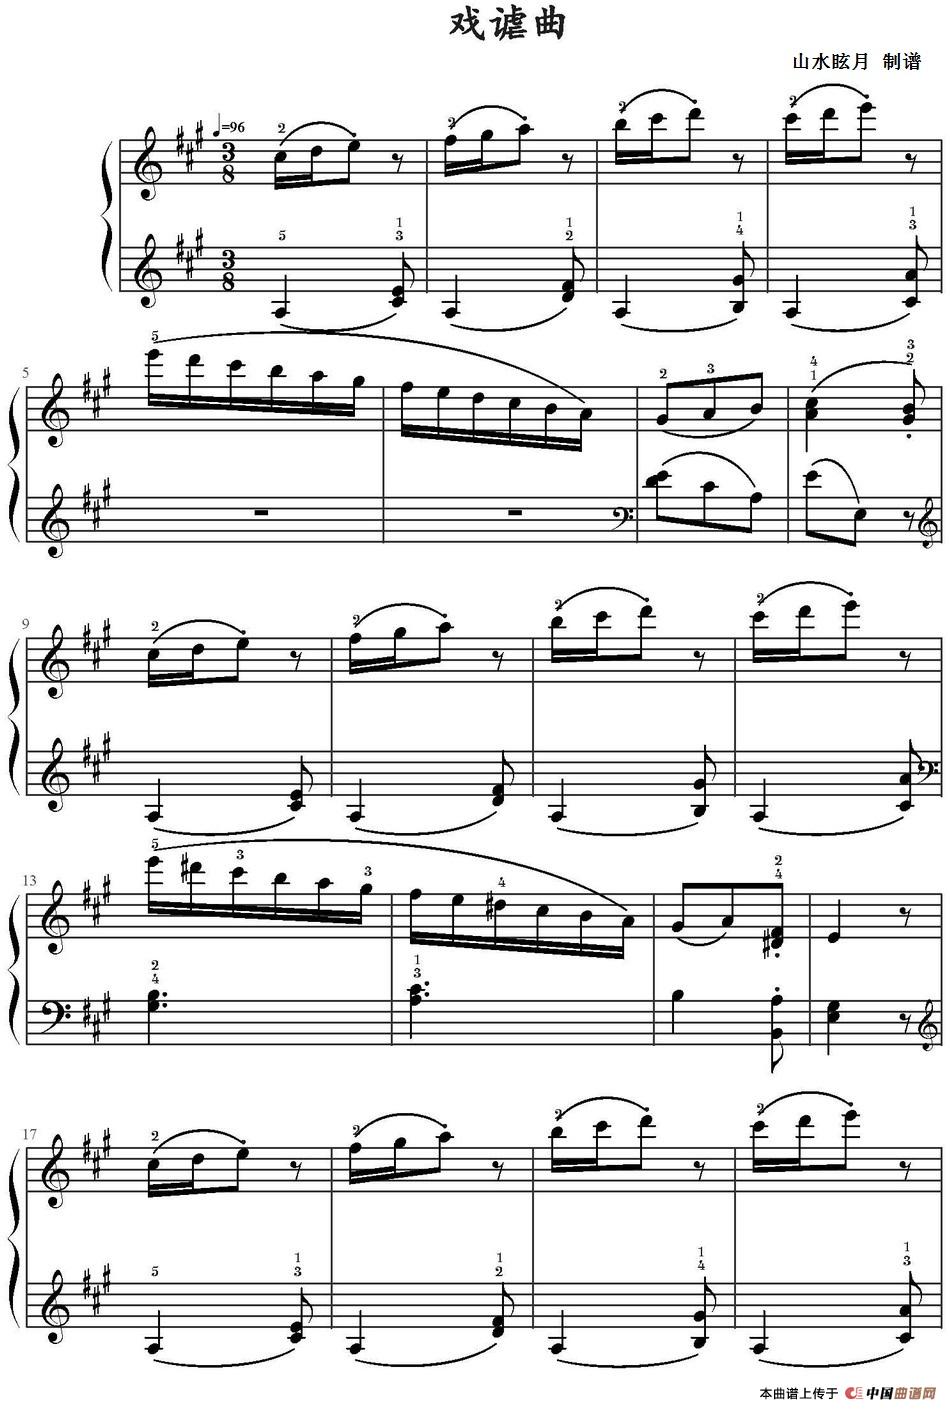 《戏谑曲》钢琴曲谱图分享